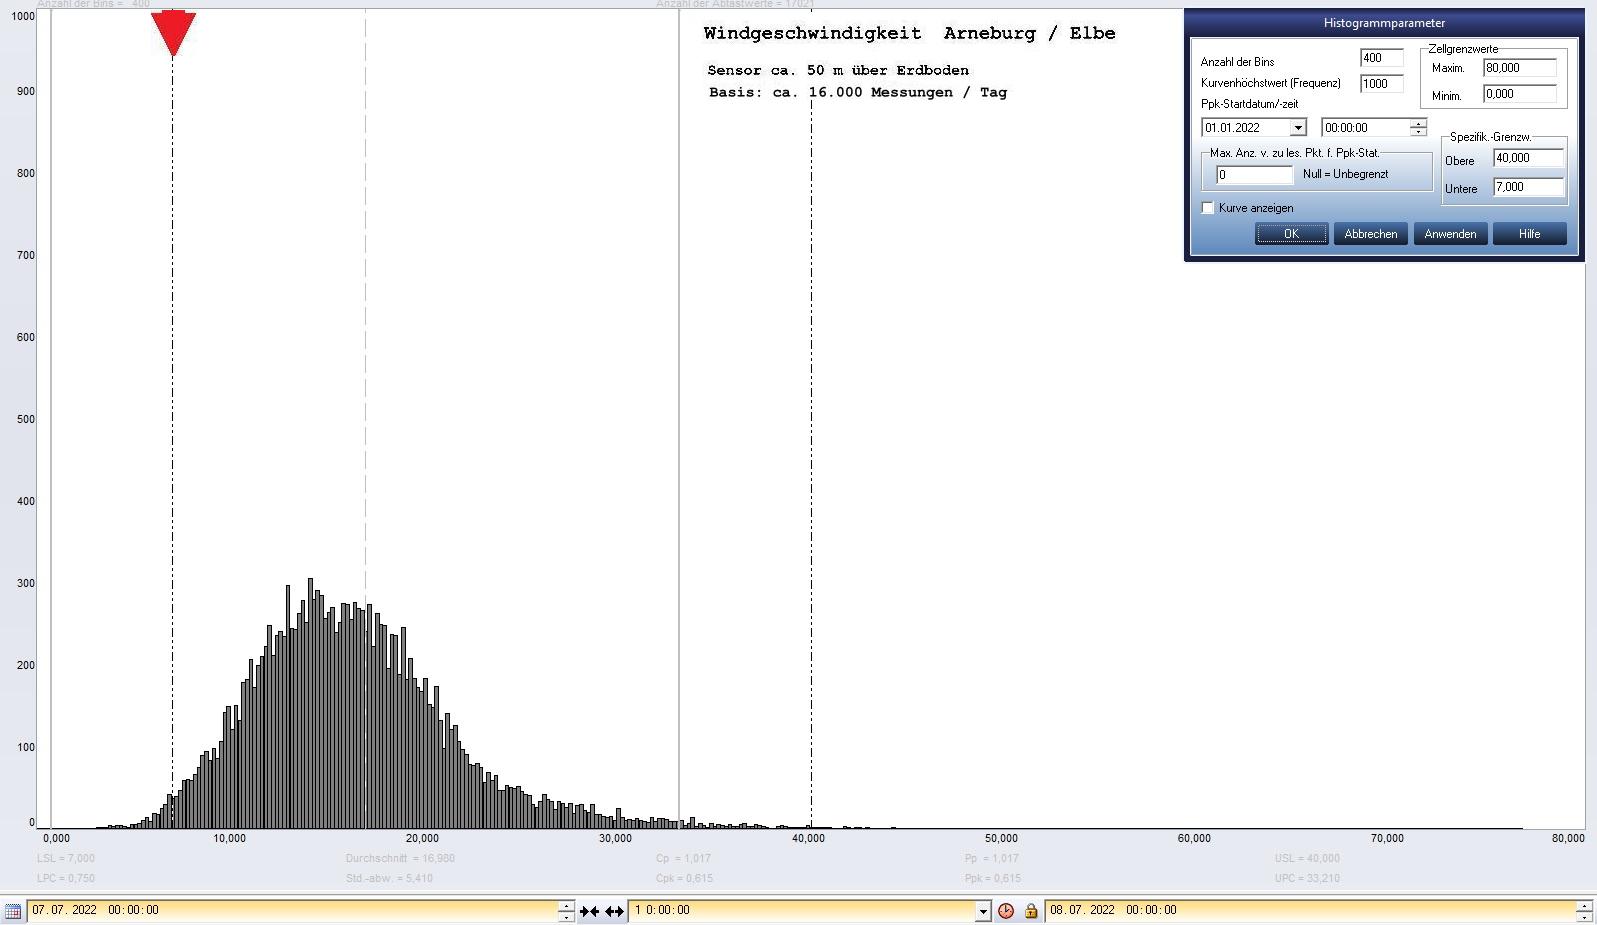 Arneburg Tages-Histogramm Winddaten, 07.07.2022
  Histogramm, Sensor auf Gebude, ca. 50 m ber Erdboden, Basis: 5s-Aufzeichnung